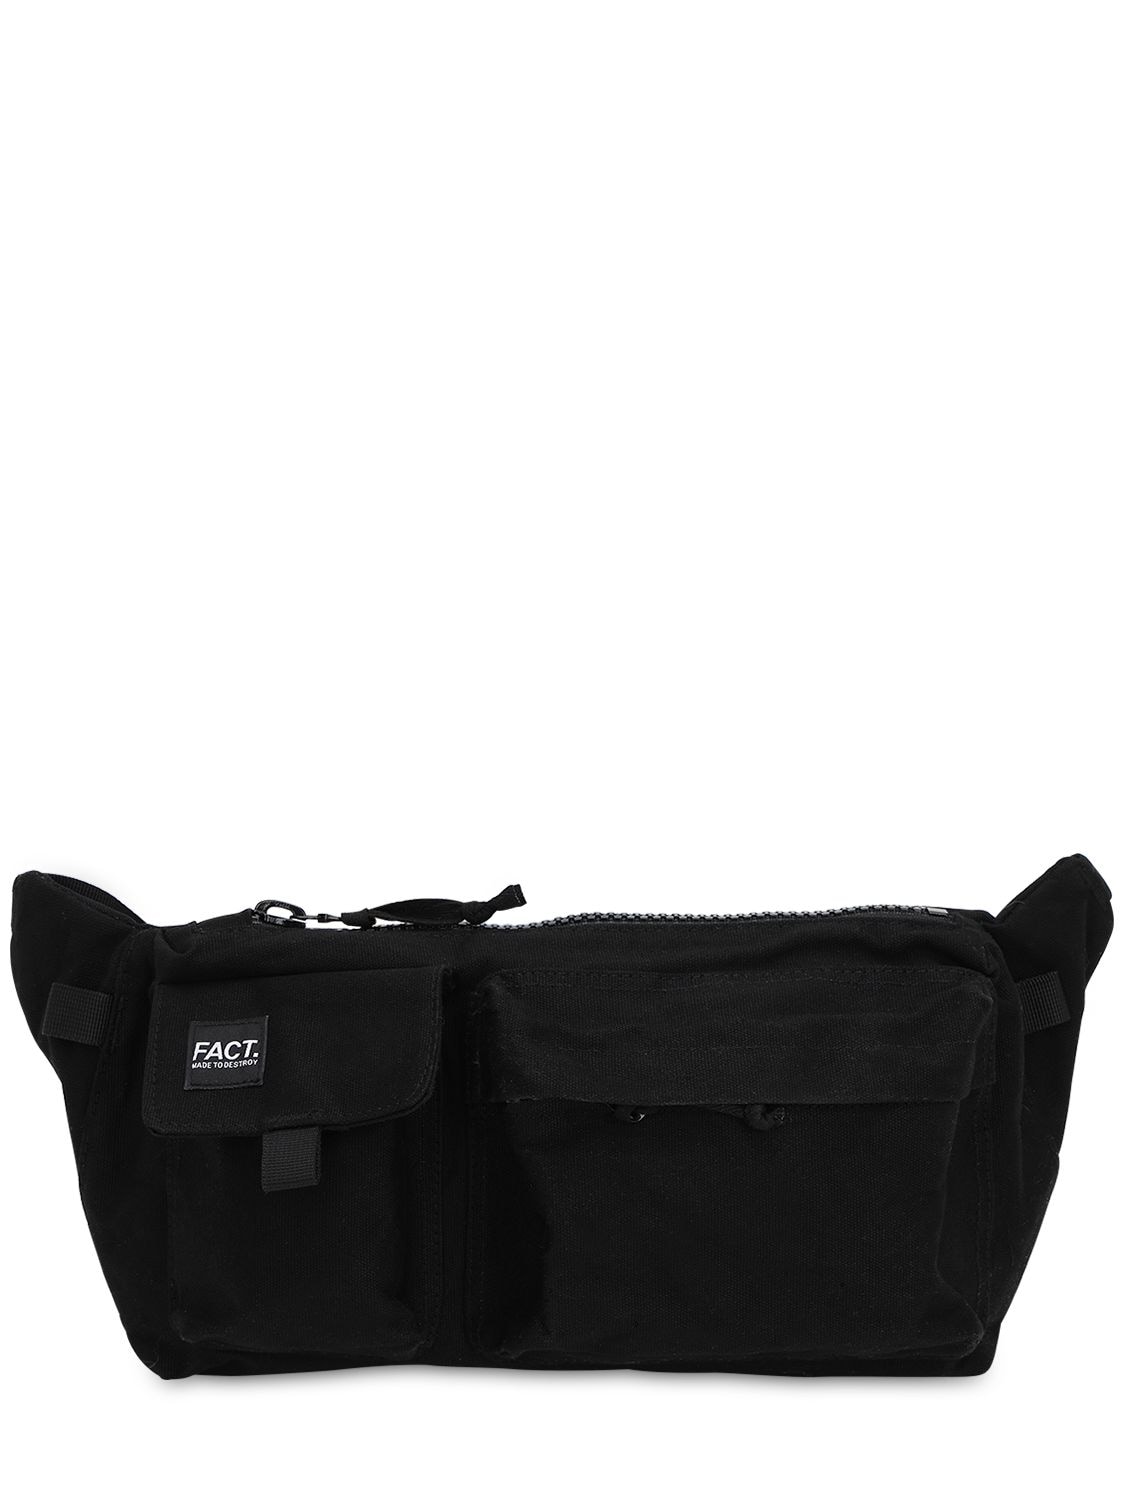 Fact. Logo Patch Cotton Shoulder Bag In Black